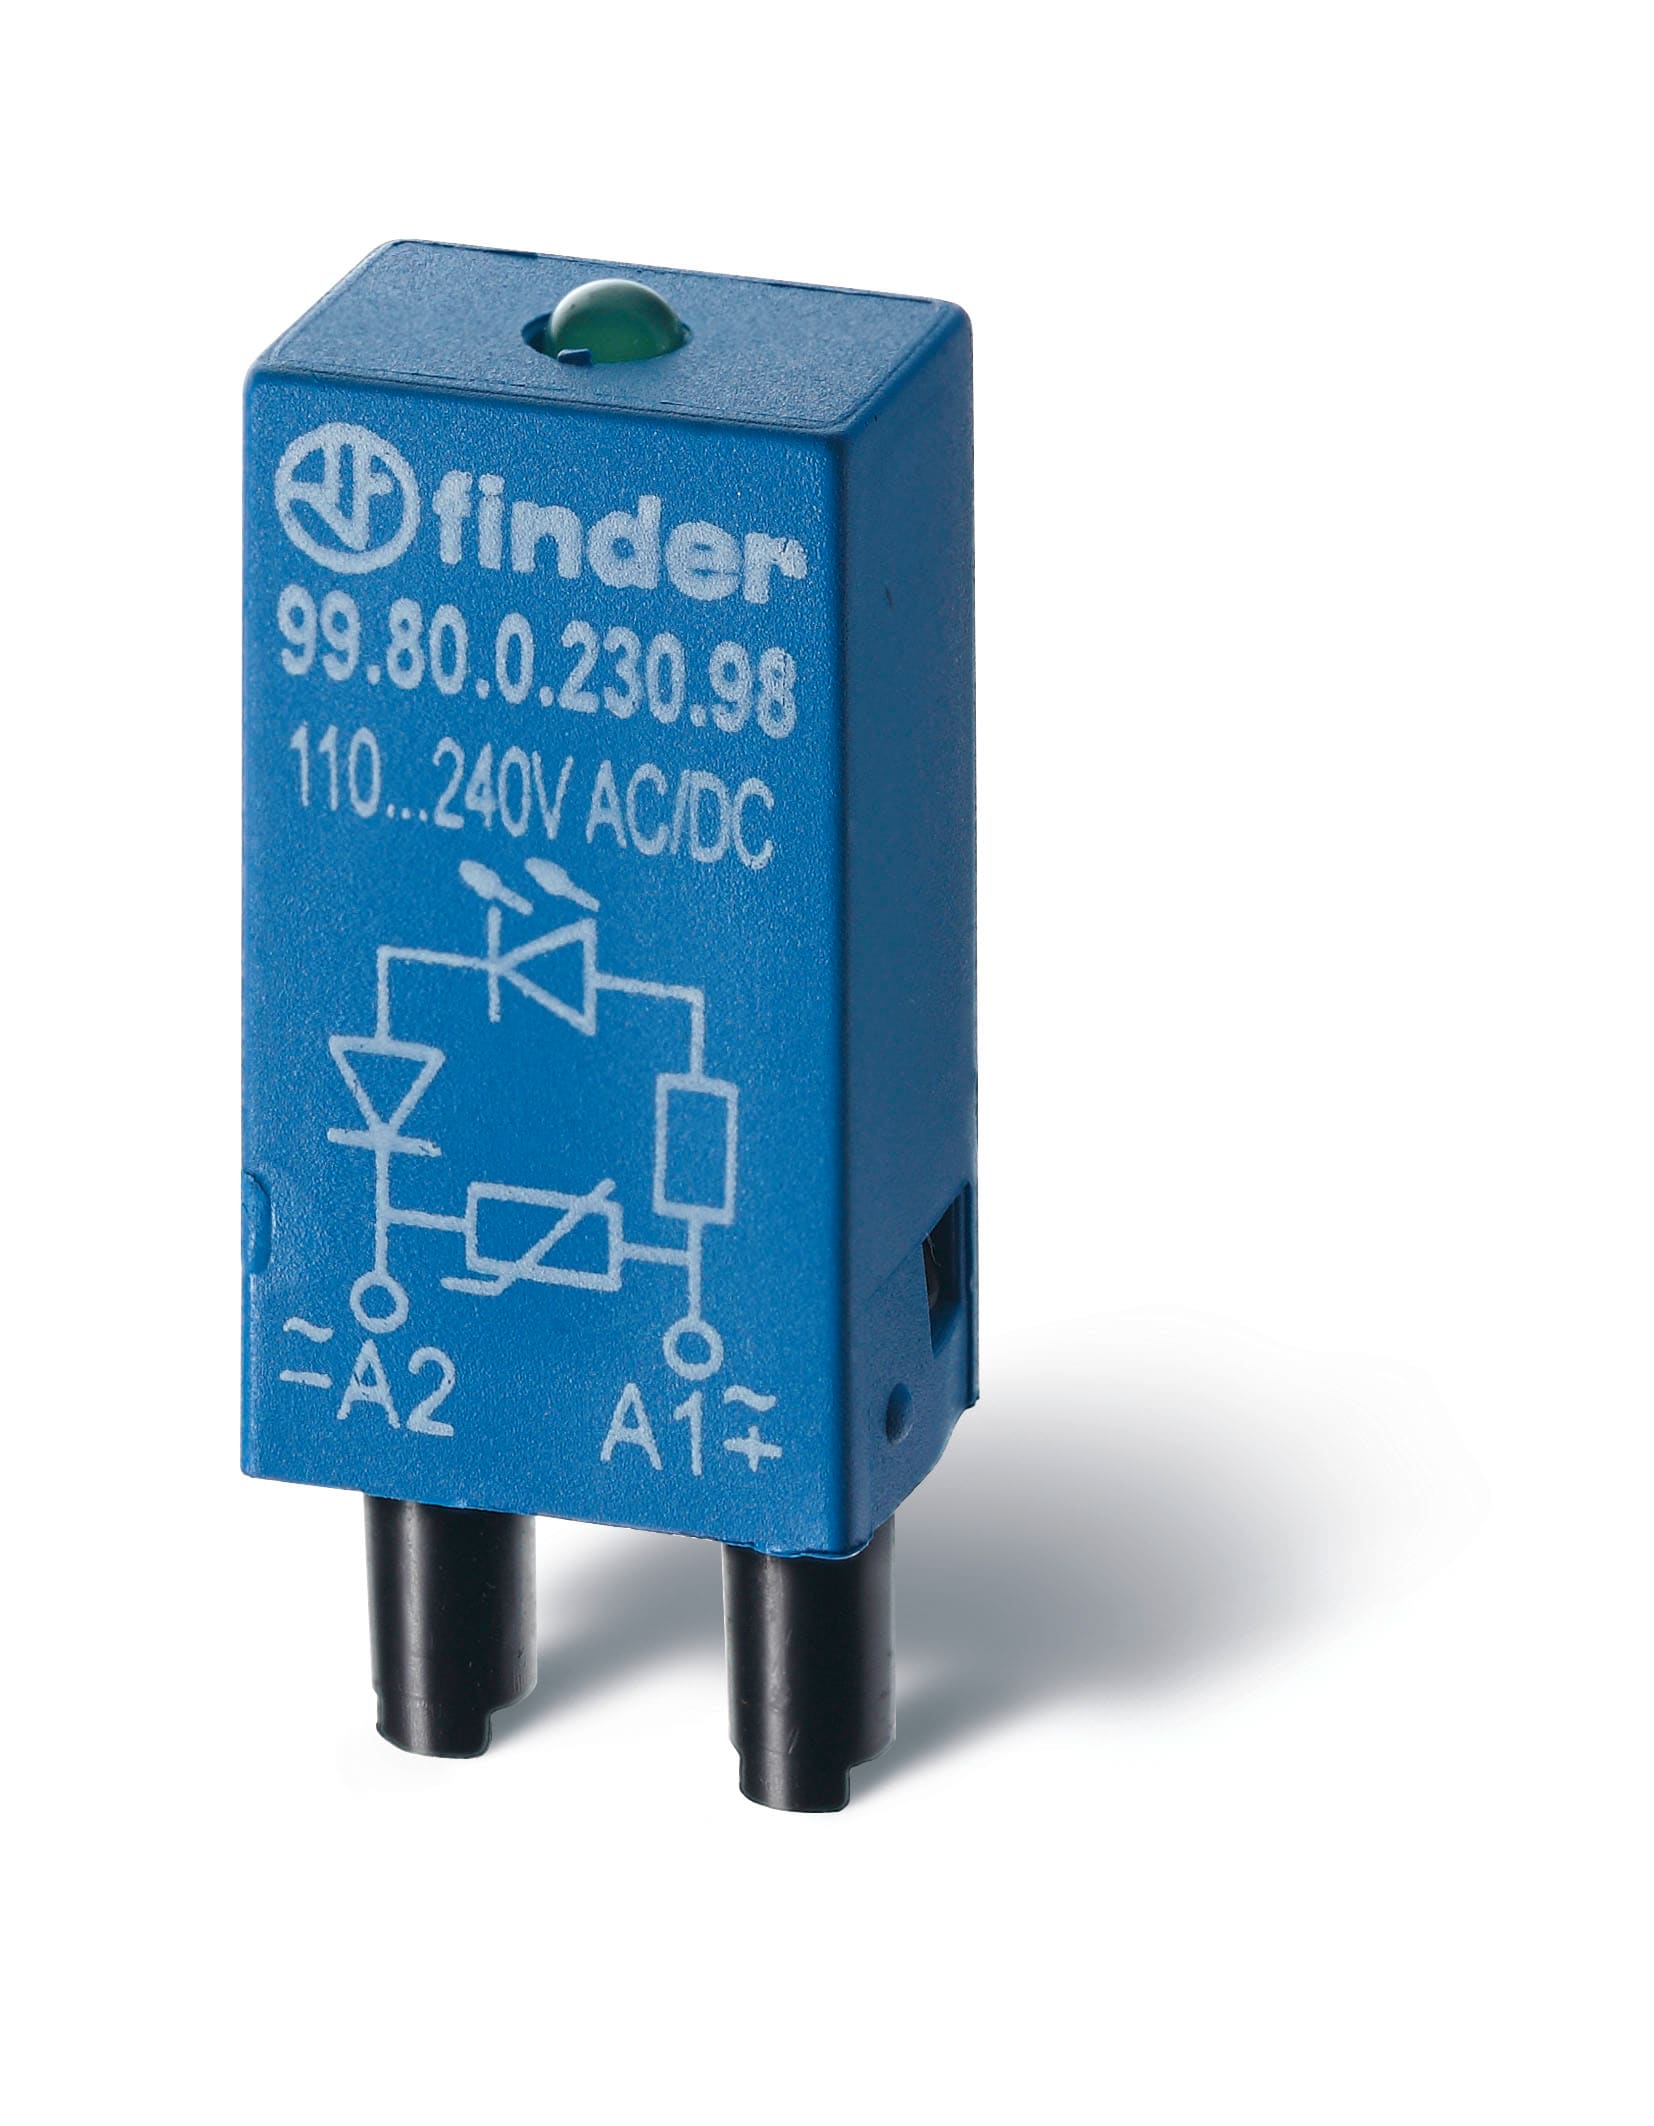 Finder - Module LED + varistor 110 a 240V AC-DC supports 95833, 95853